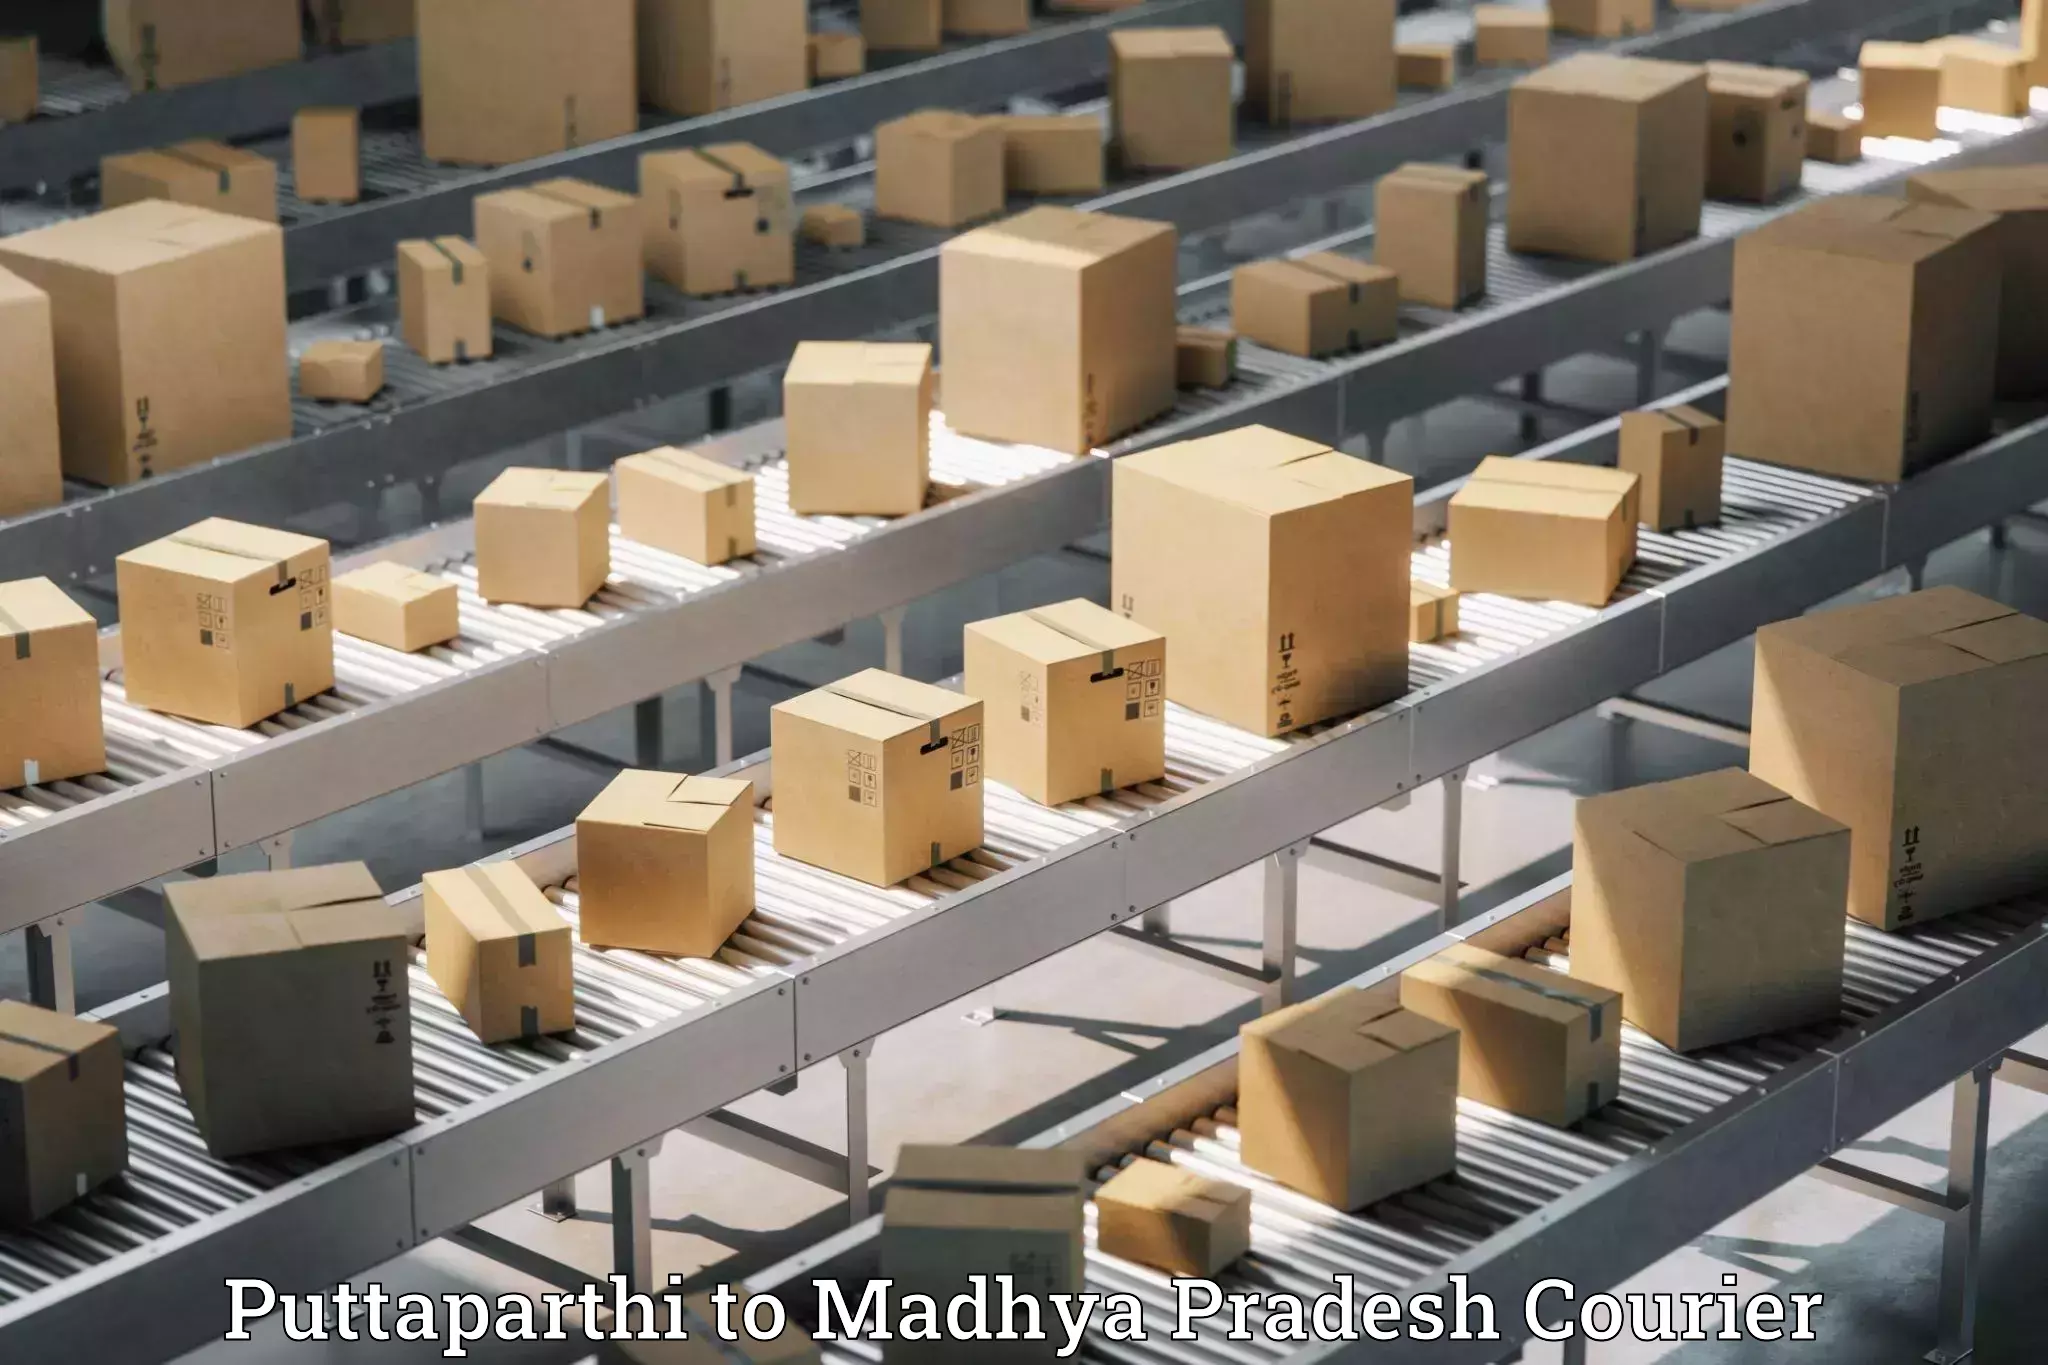 Luggage delivery app Puttaparthi to Madhya Pradesh